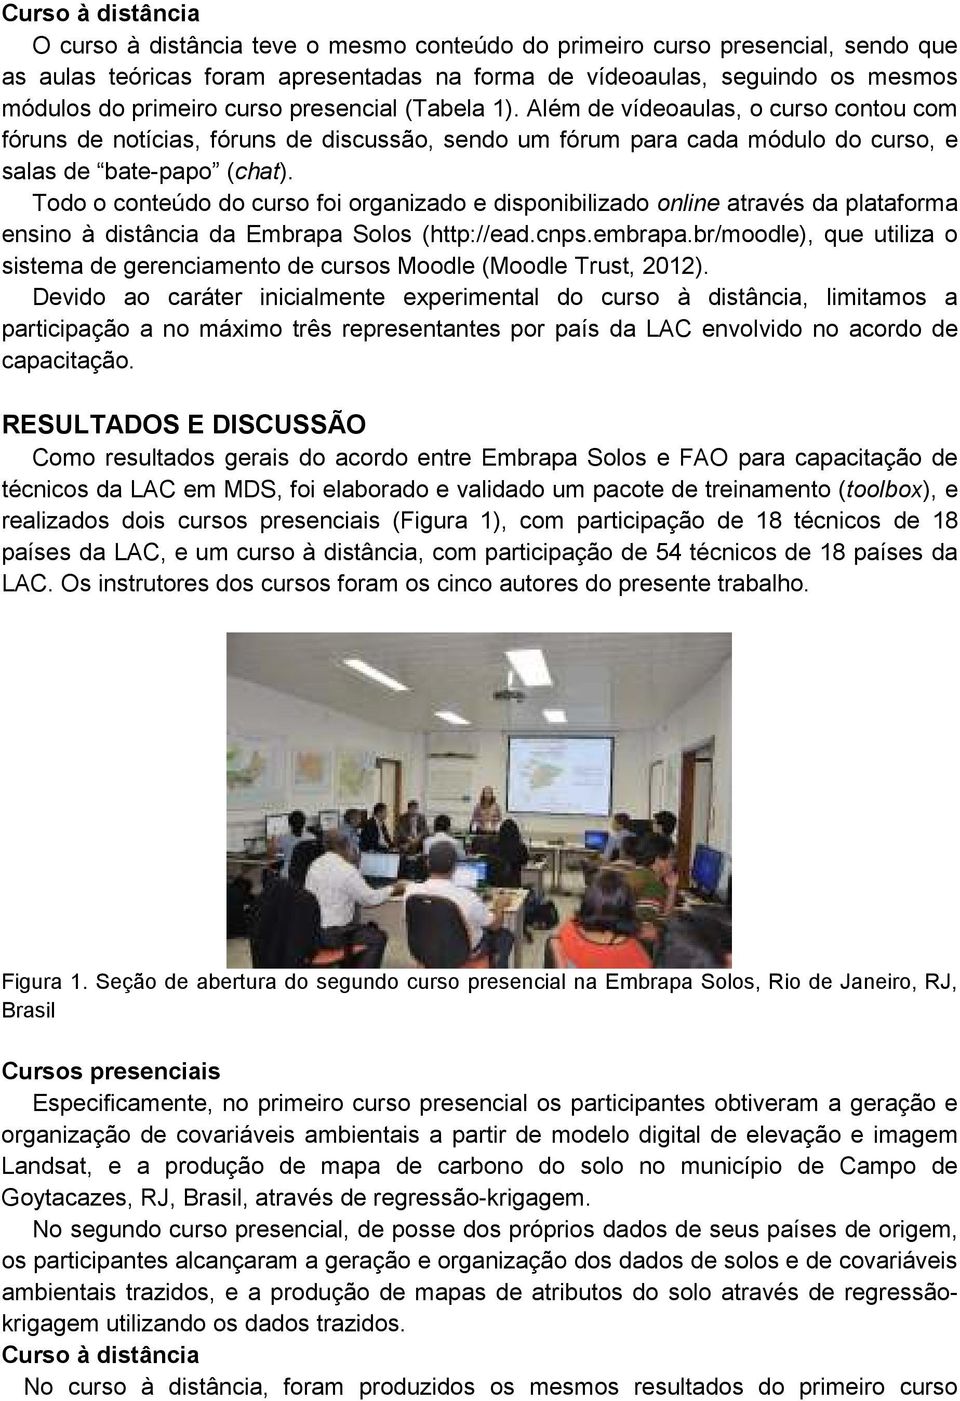 Todo o conteúdo do curso foi organizado e disponibilizado online através da plataforma ensino à distância da Embrapa Solos (http://ead.cnps.embrapa.